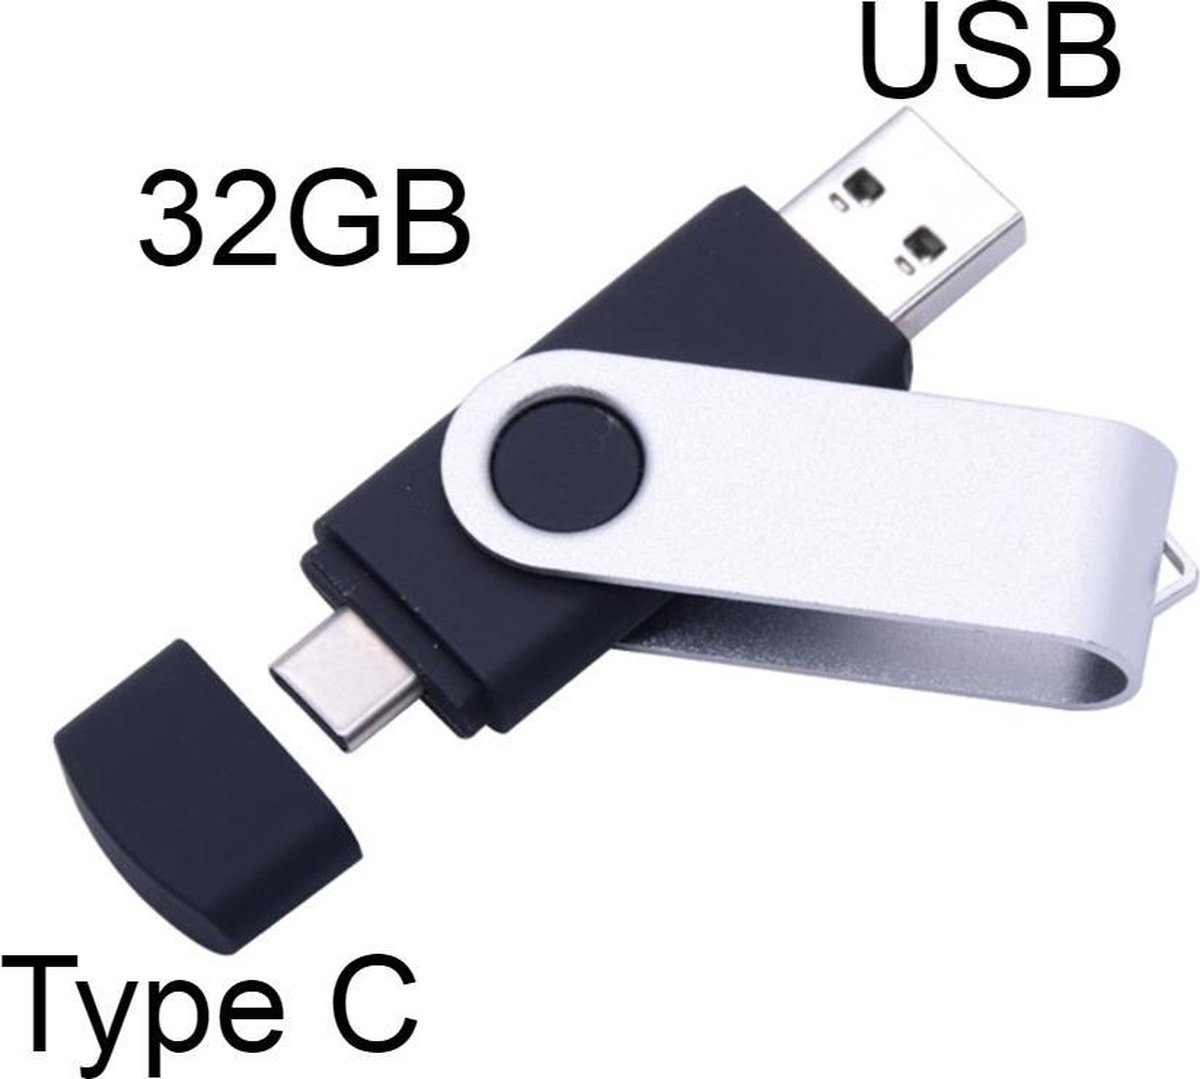 2 Stuks USB-C USB 3.0 Stick - 2 in 1 - Geheugen stick - Flash Drive - 32GB  - Voor USB... | bol.com